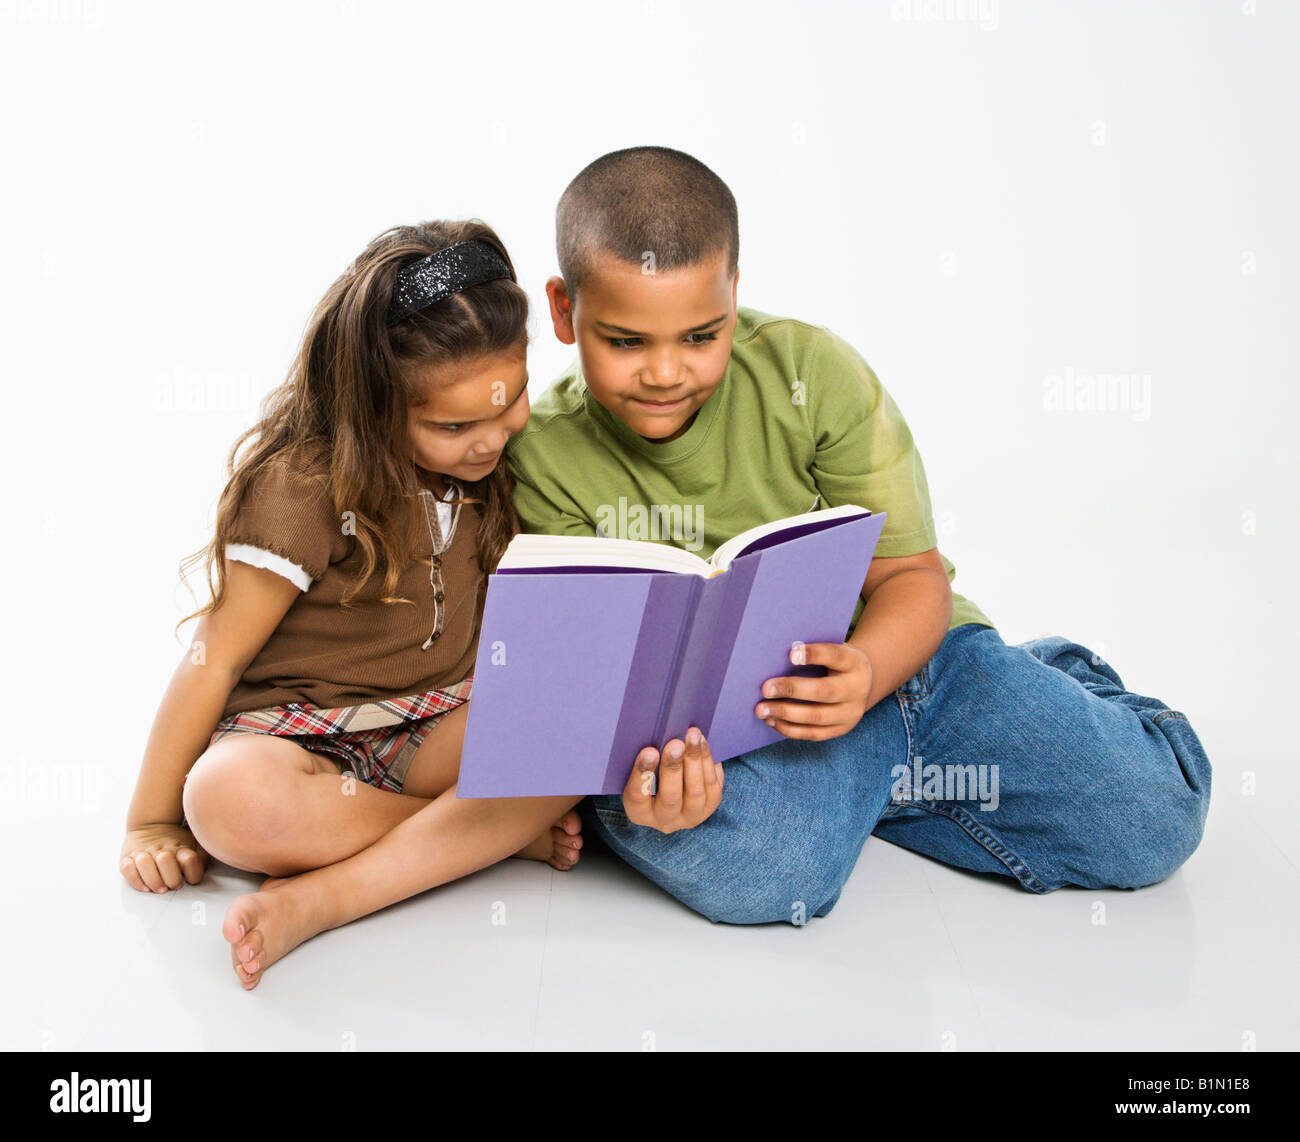 My sister to read books. Чтение книги мальчик и девочка. Братья и сёстры книга. Книжка про сестру. Мальчик и девочка читают книгу.